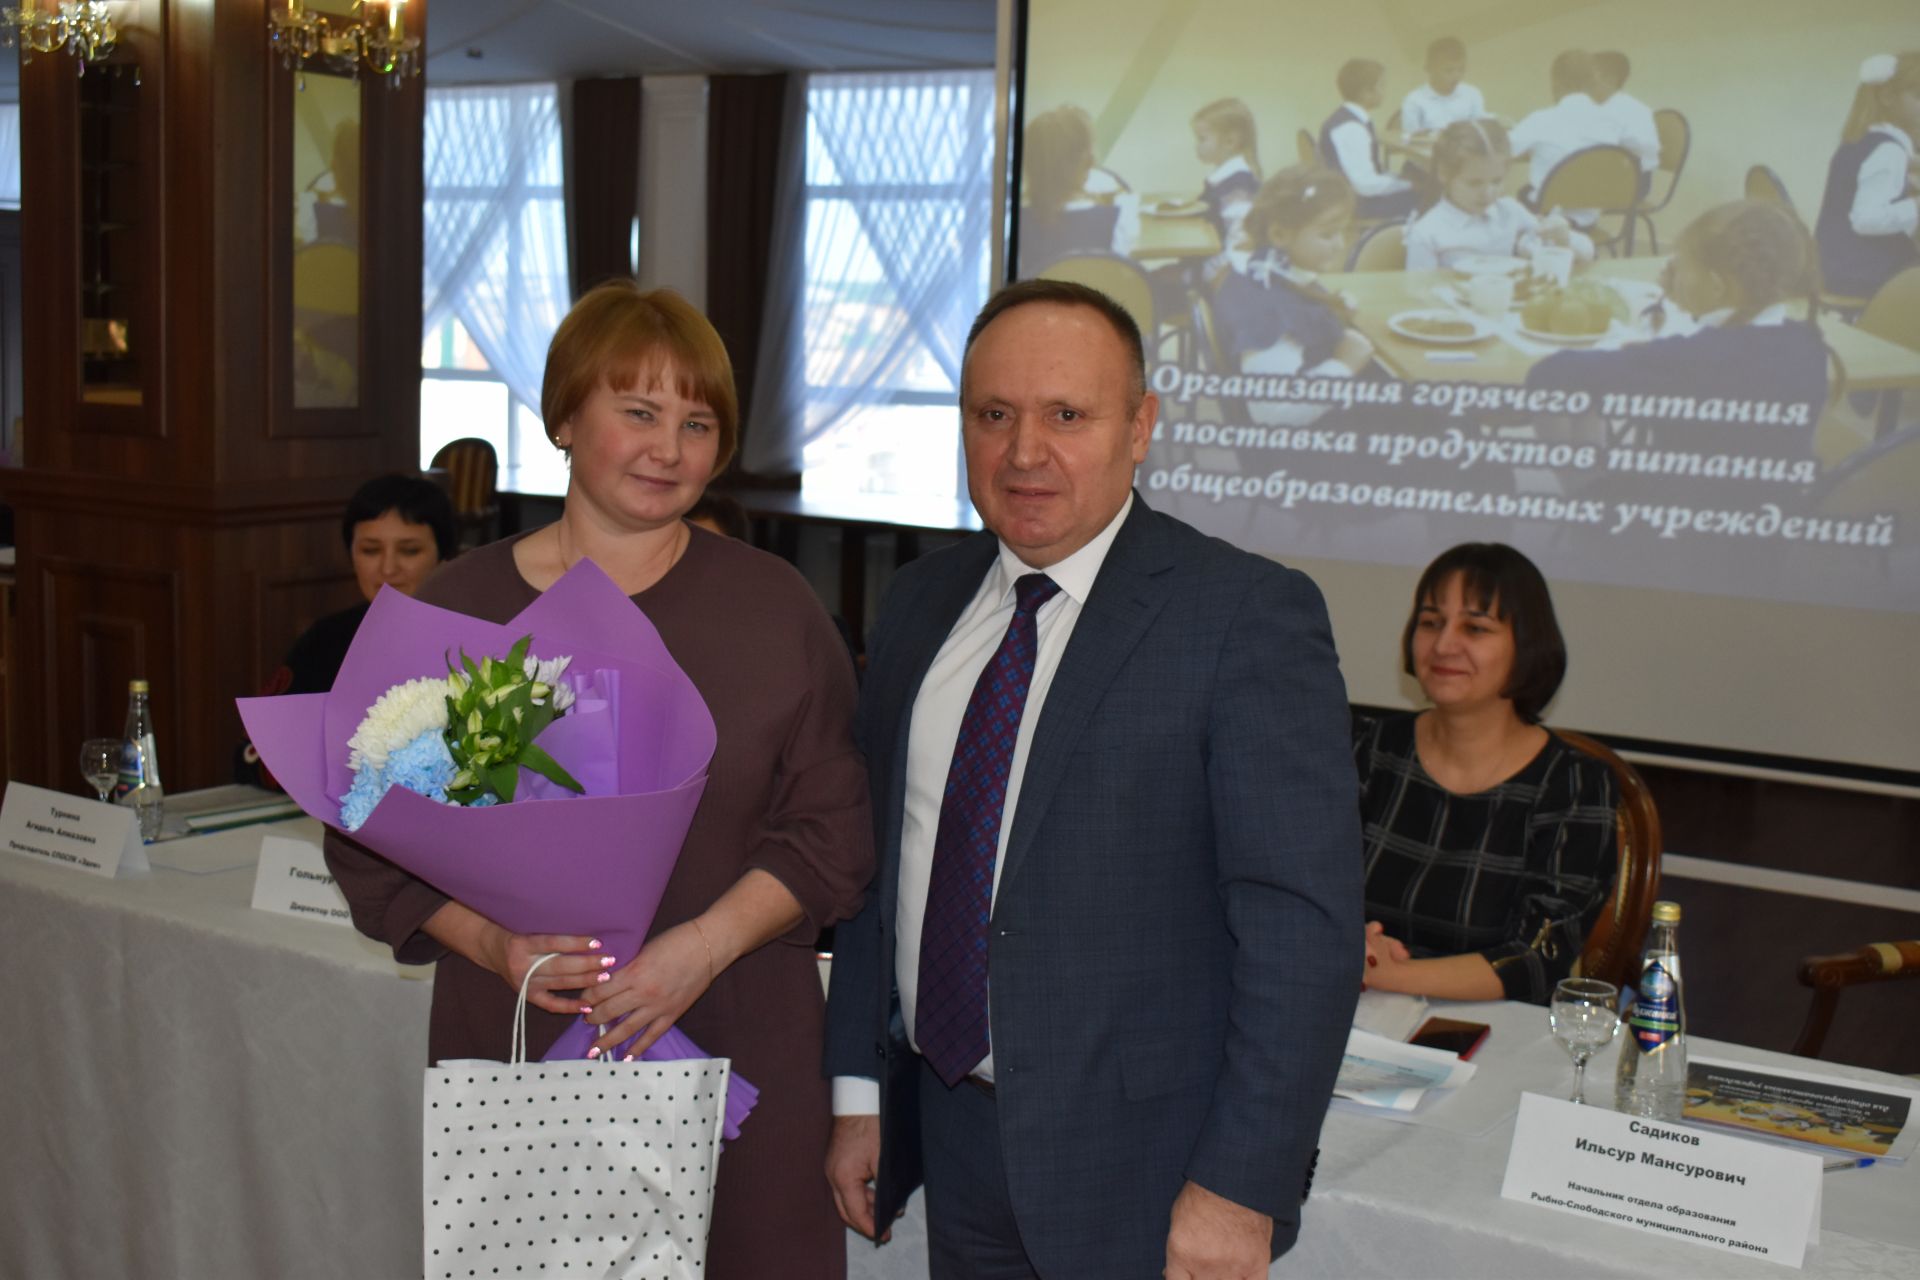 Руководители образовательных учреждений Алексеевского и Рыбнослободского районов обсудили питание детей в школах и детских садах